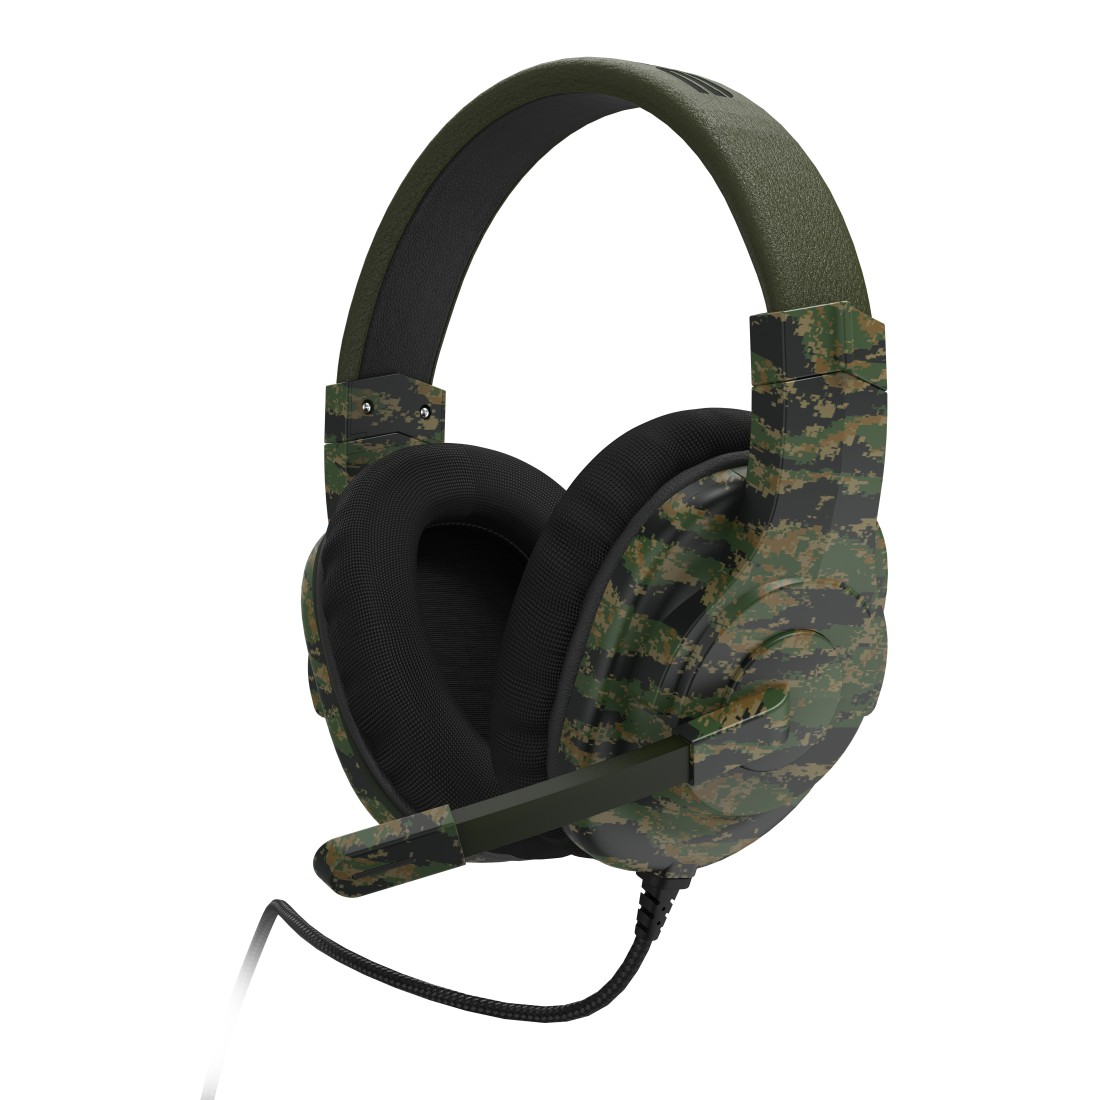 SoundZ Gaming uRage 330, Schwarz/Grün Over-ear Headset